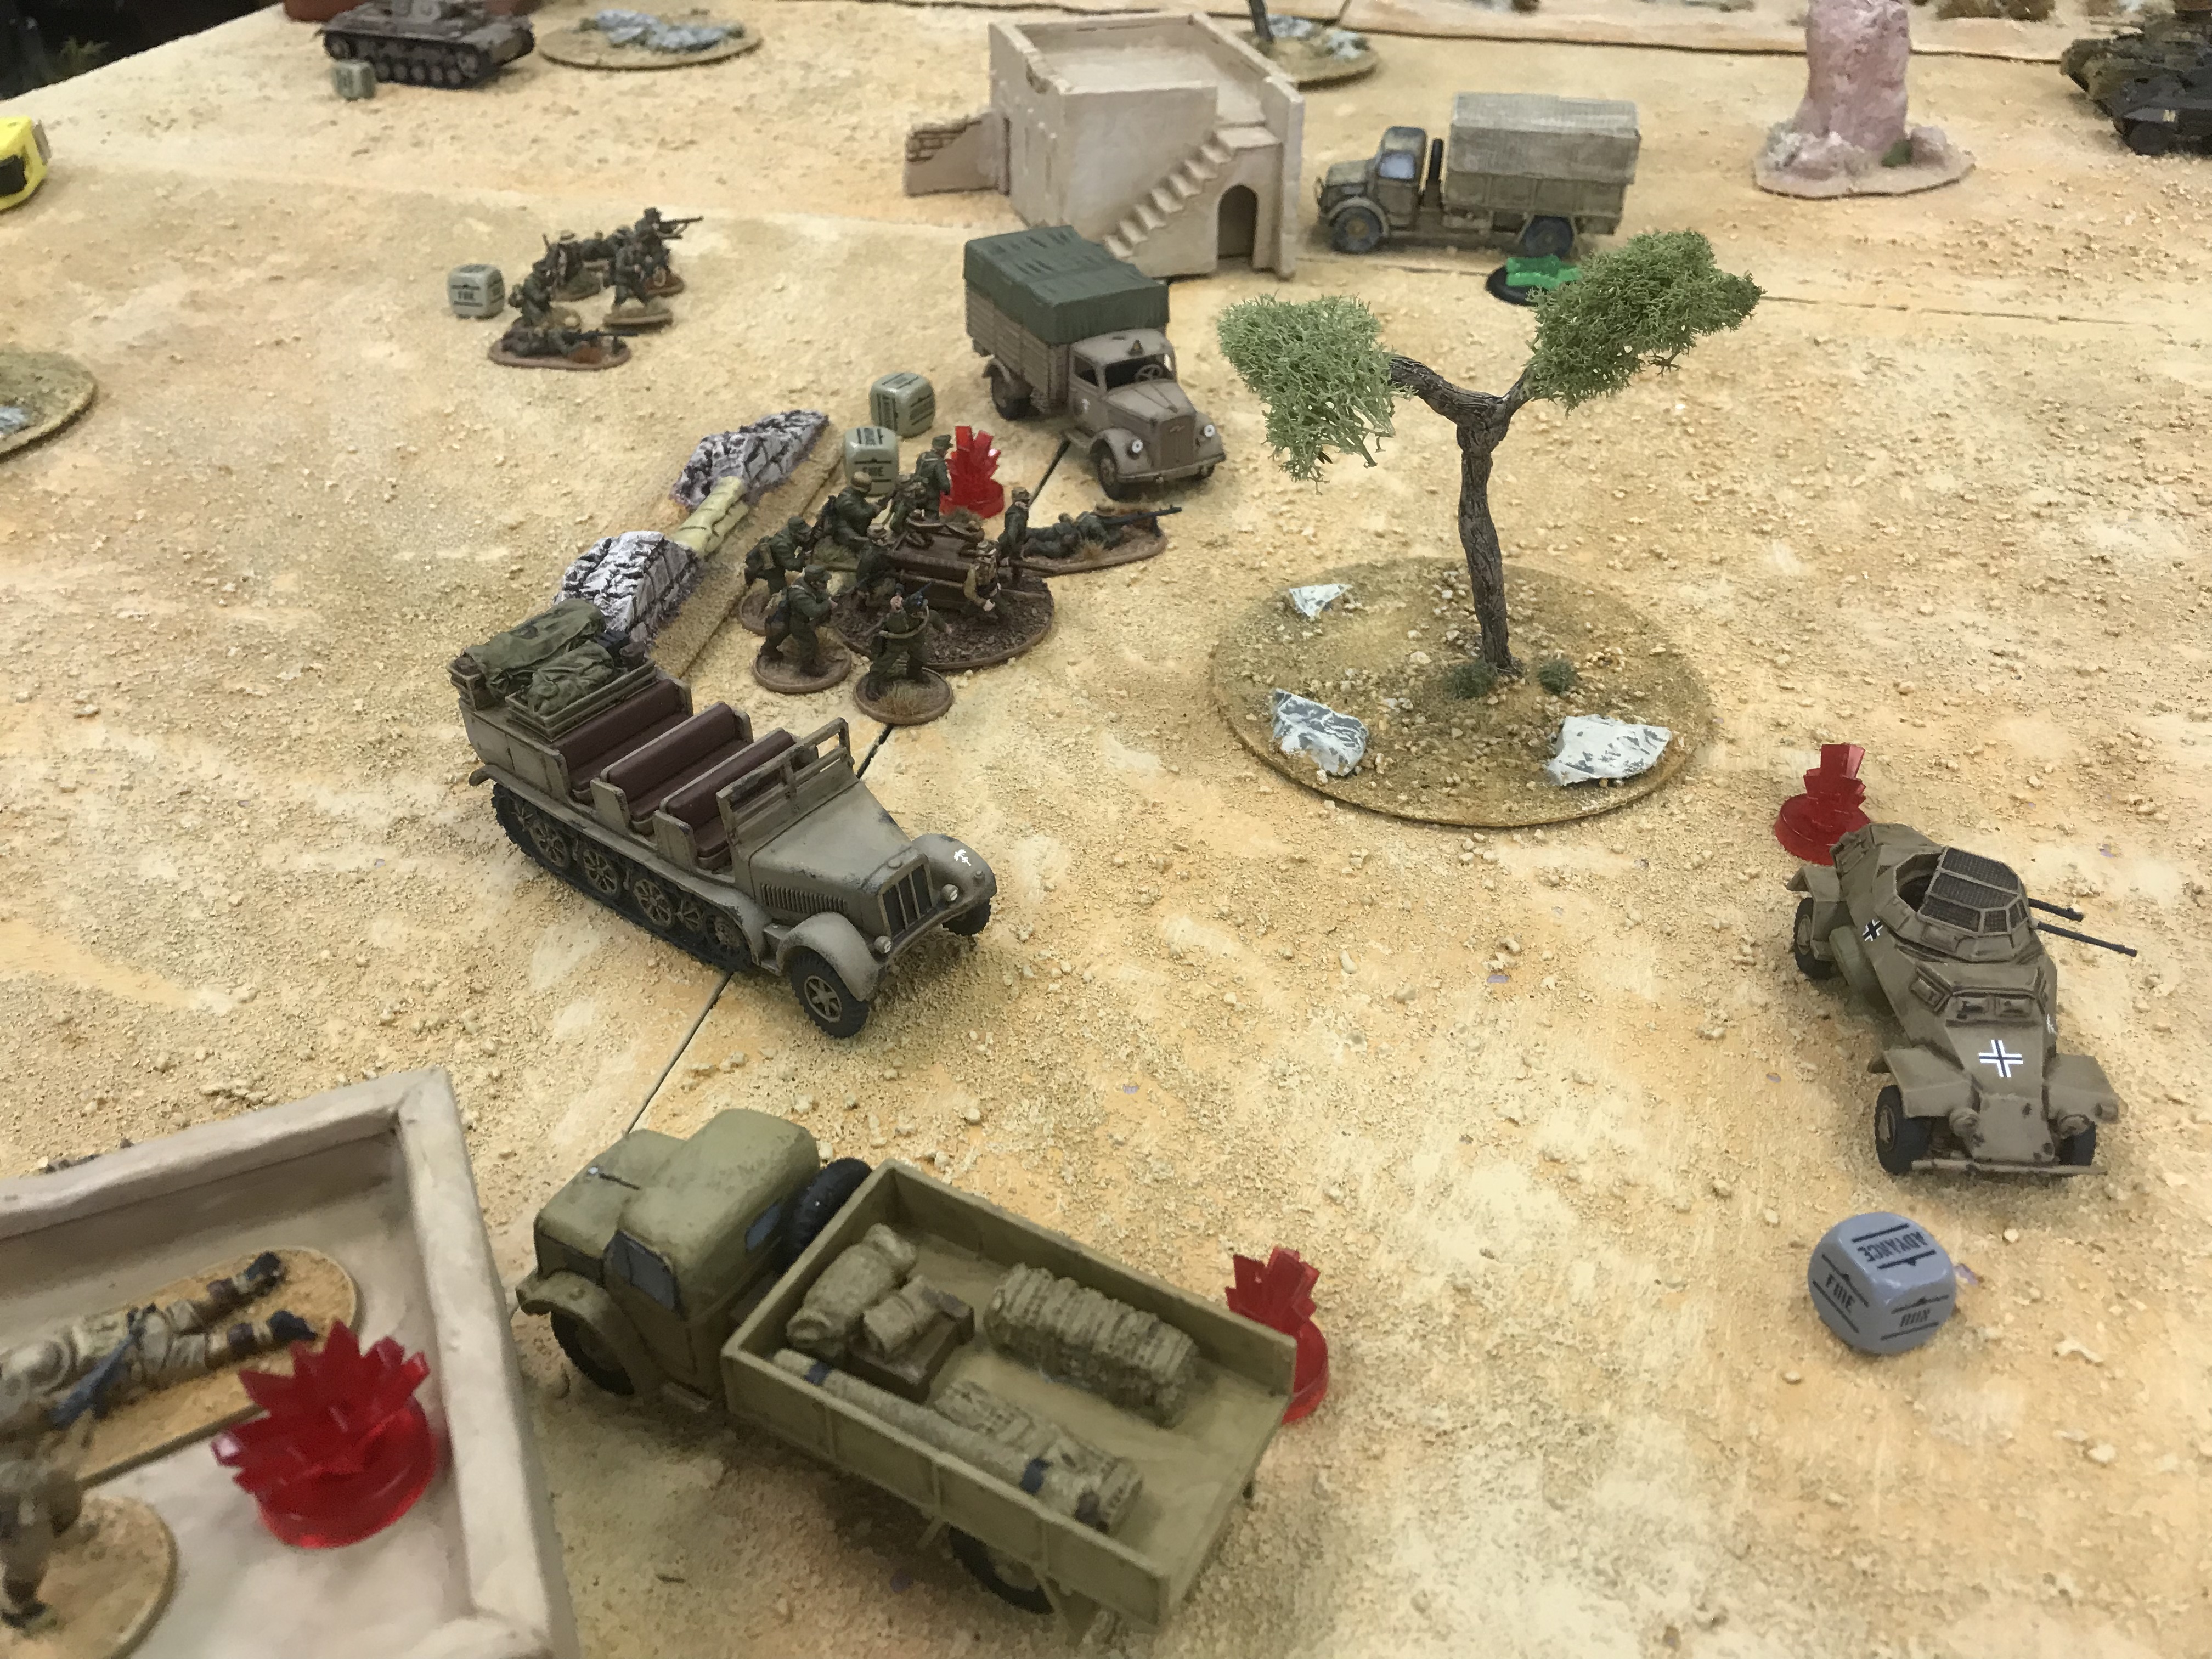 Heer Defenders versus US Rejects in a fierce infantry engagement